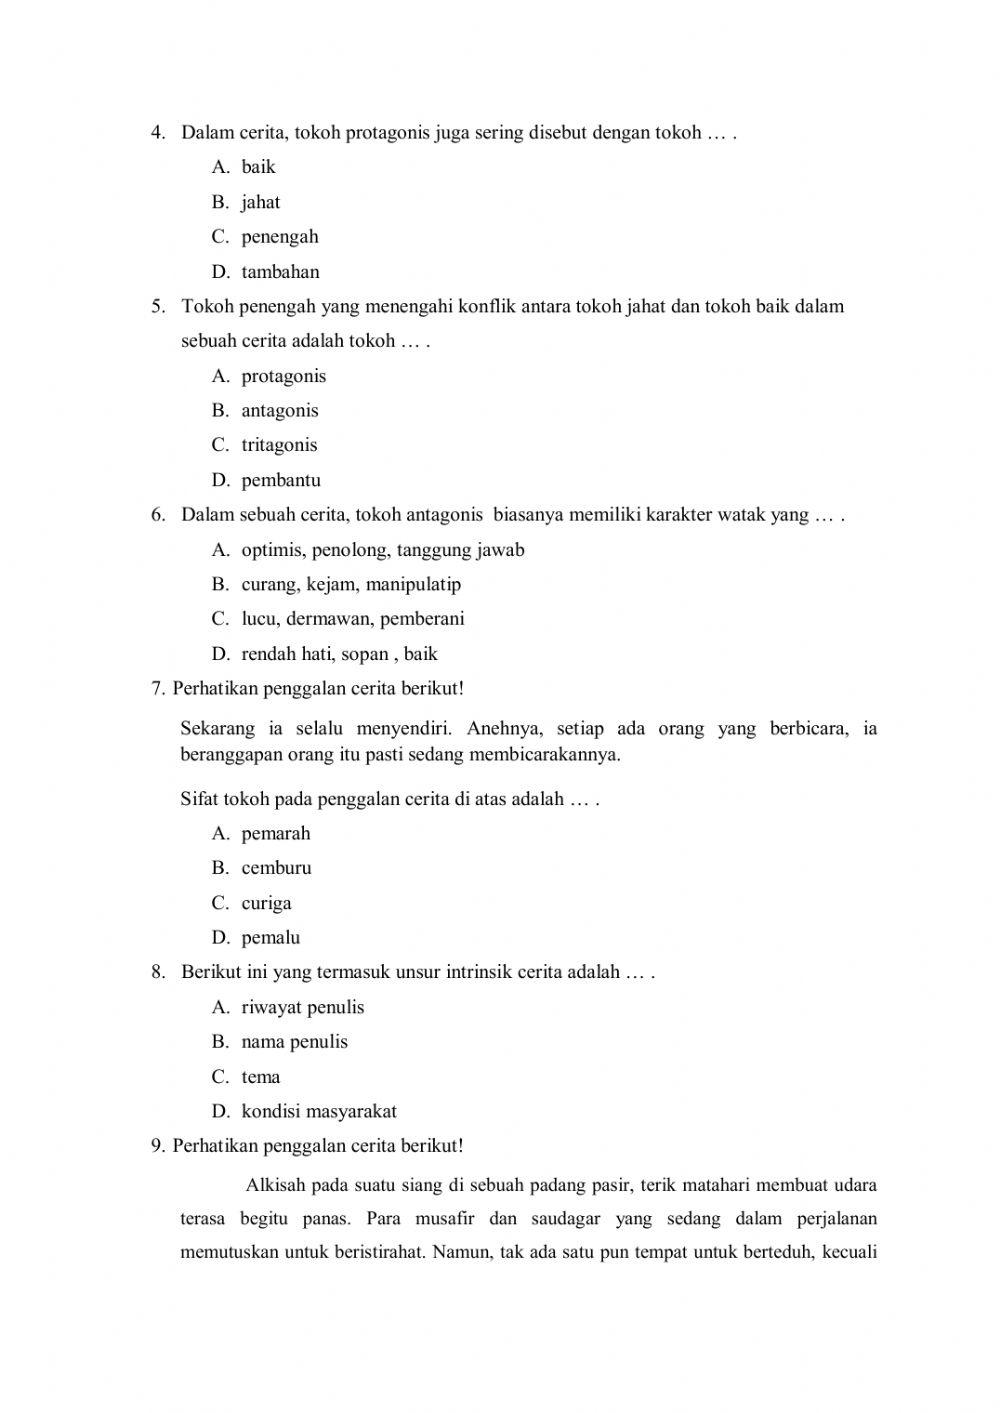 PAS Tema 4 Bahasa Indonesia